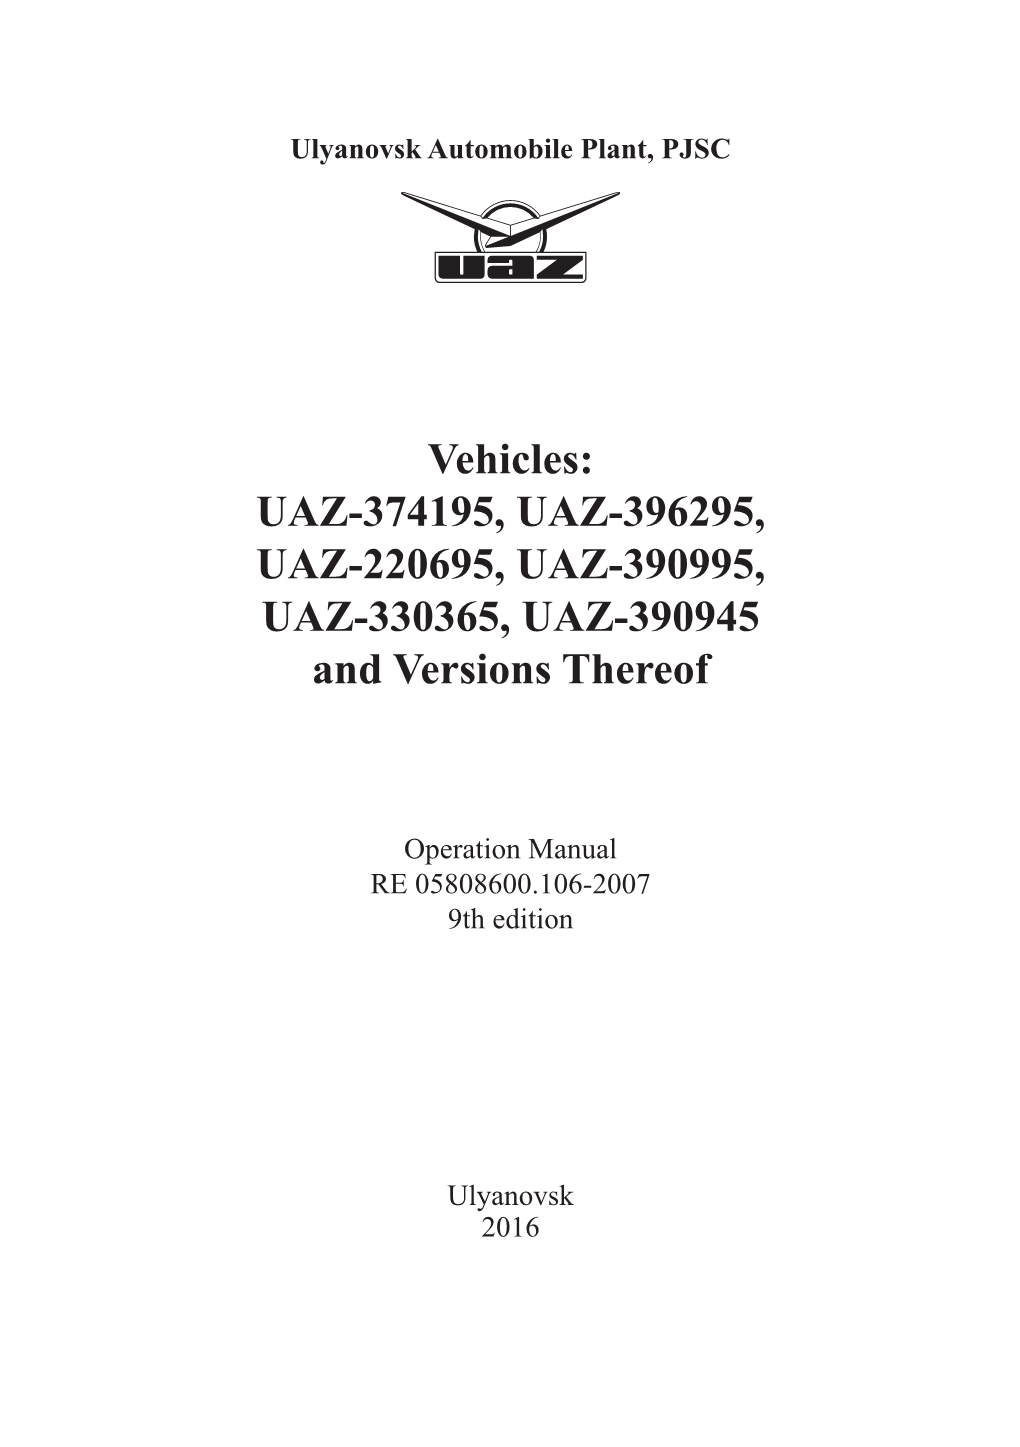 Vehicles: UAZ-374195, UAZ-396295, UAZ-220695, UAZ-390995, UAZ-330365, UAZ-390945 and Versions Thereof